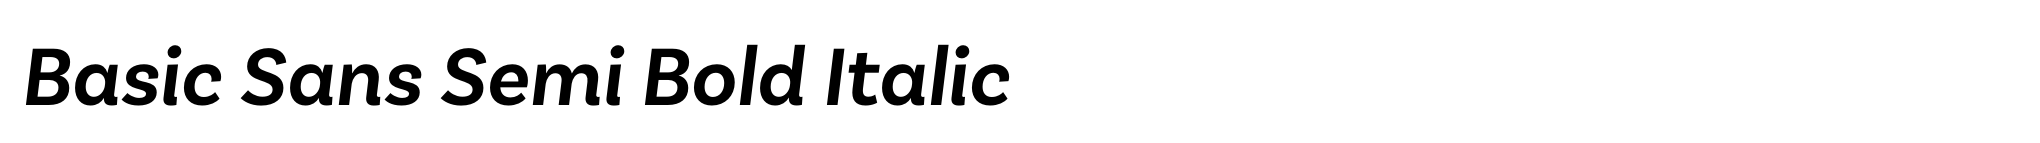 Basic Sans Semi Bold Italic image